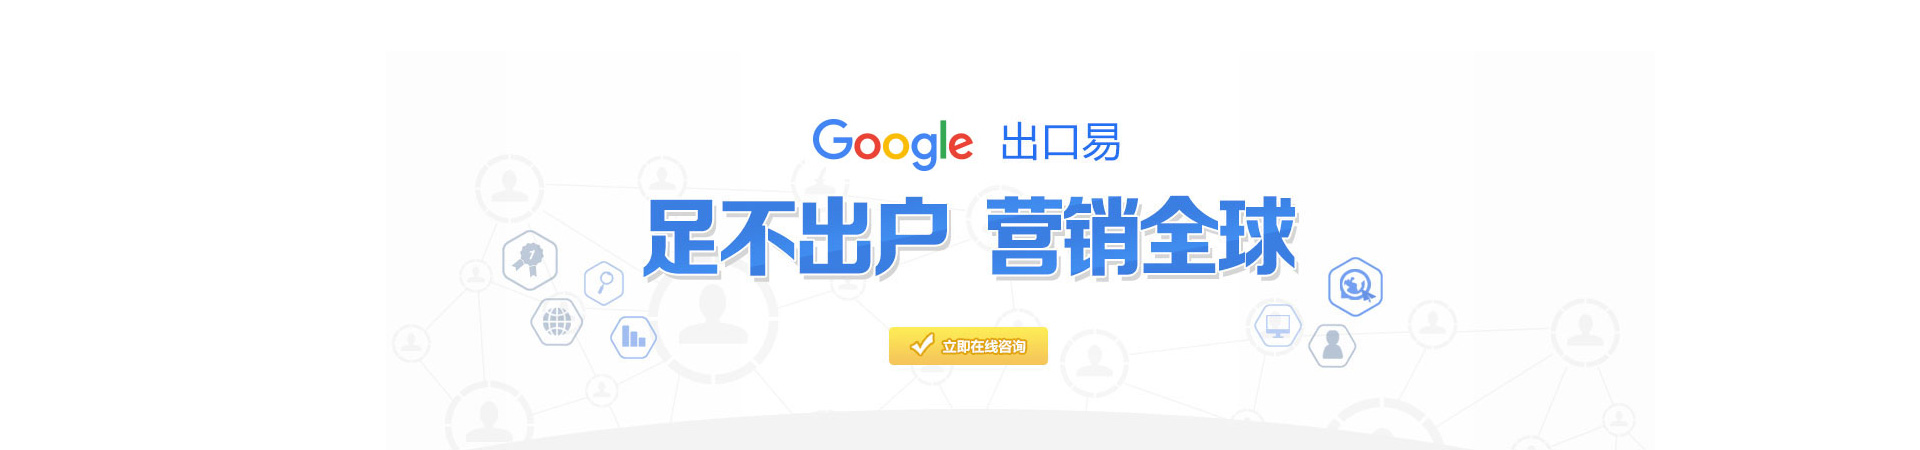 贵州谷歌海外推广